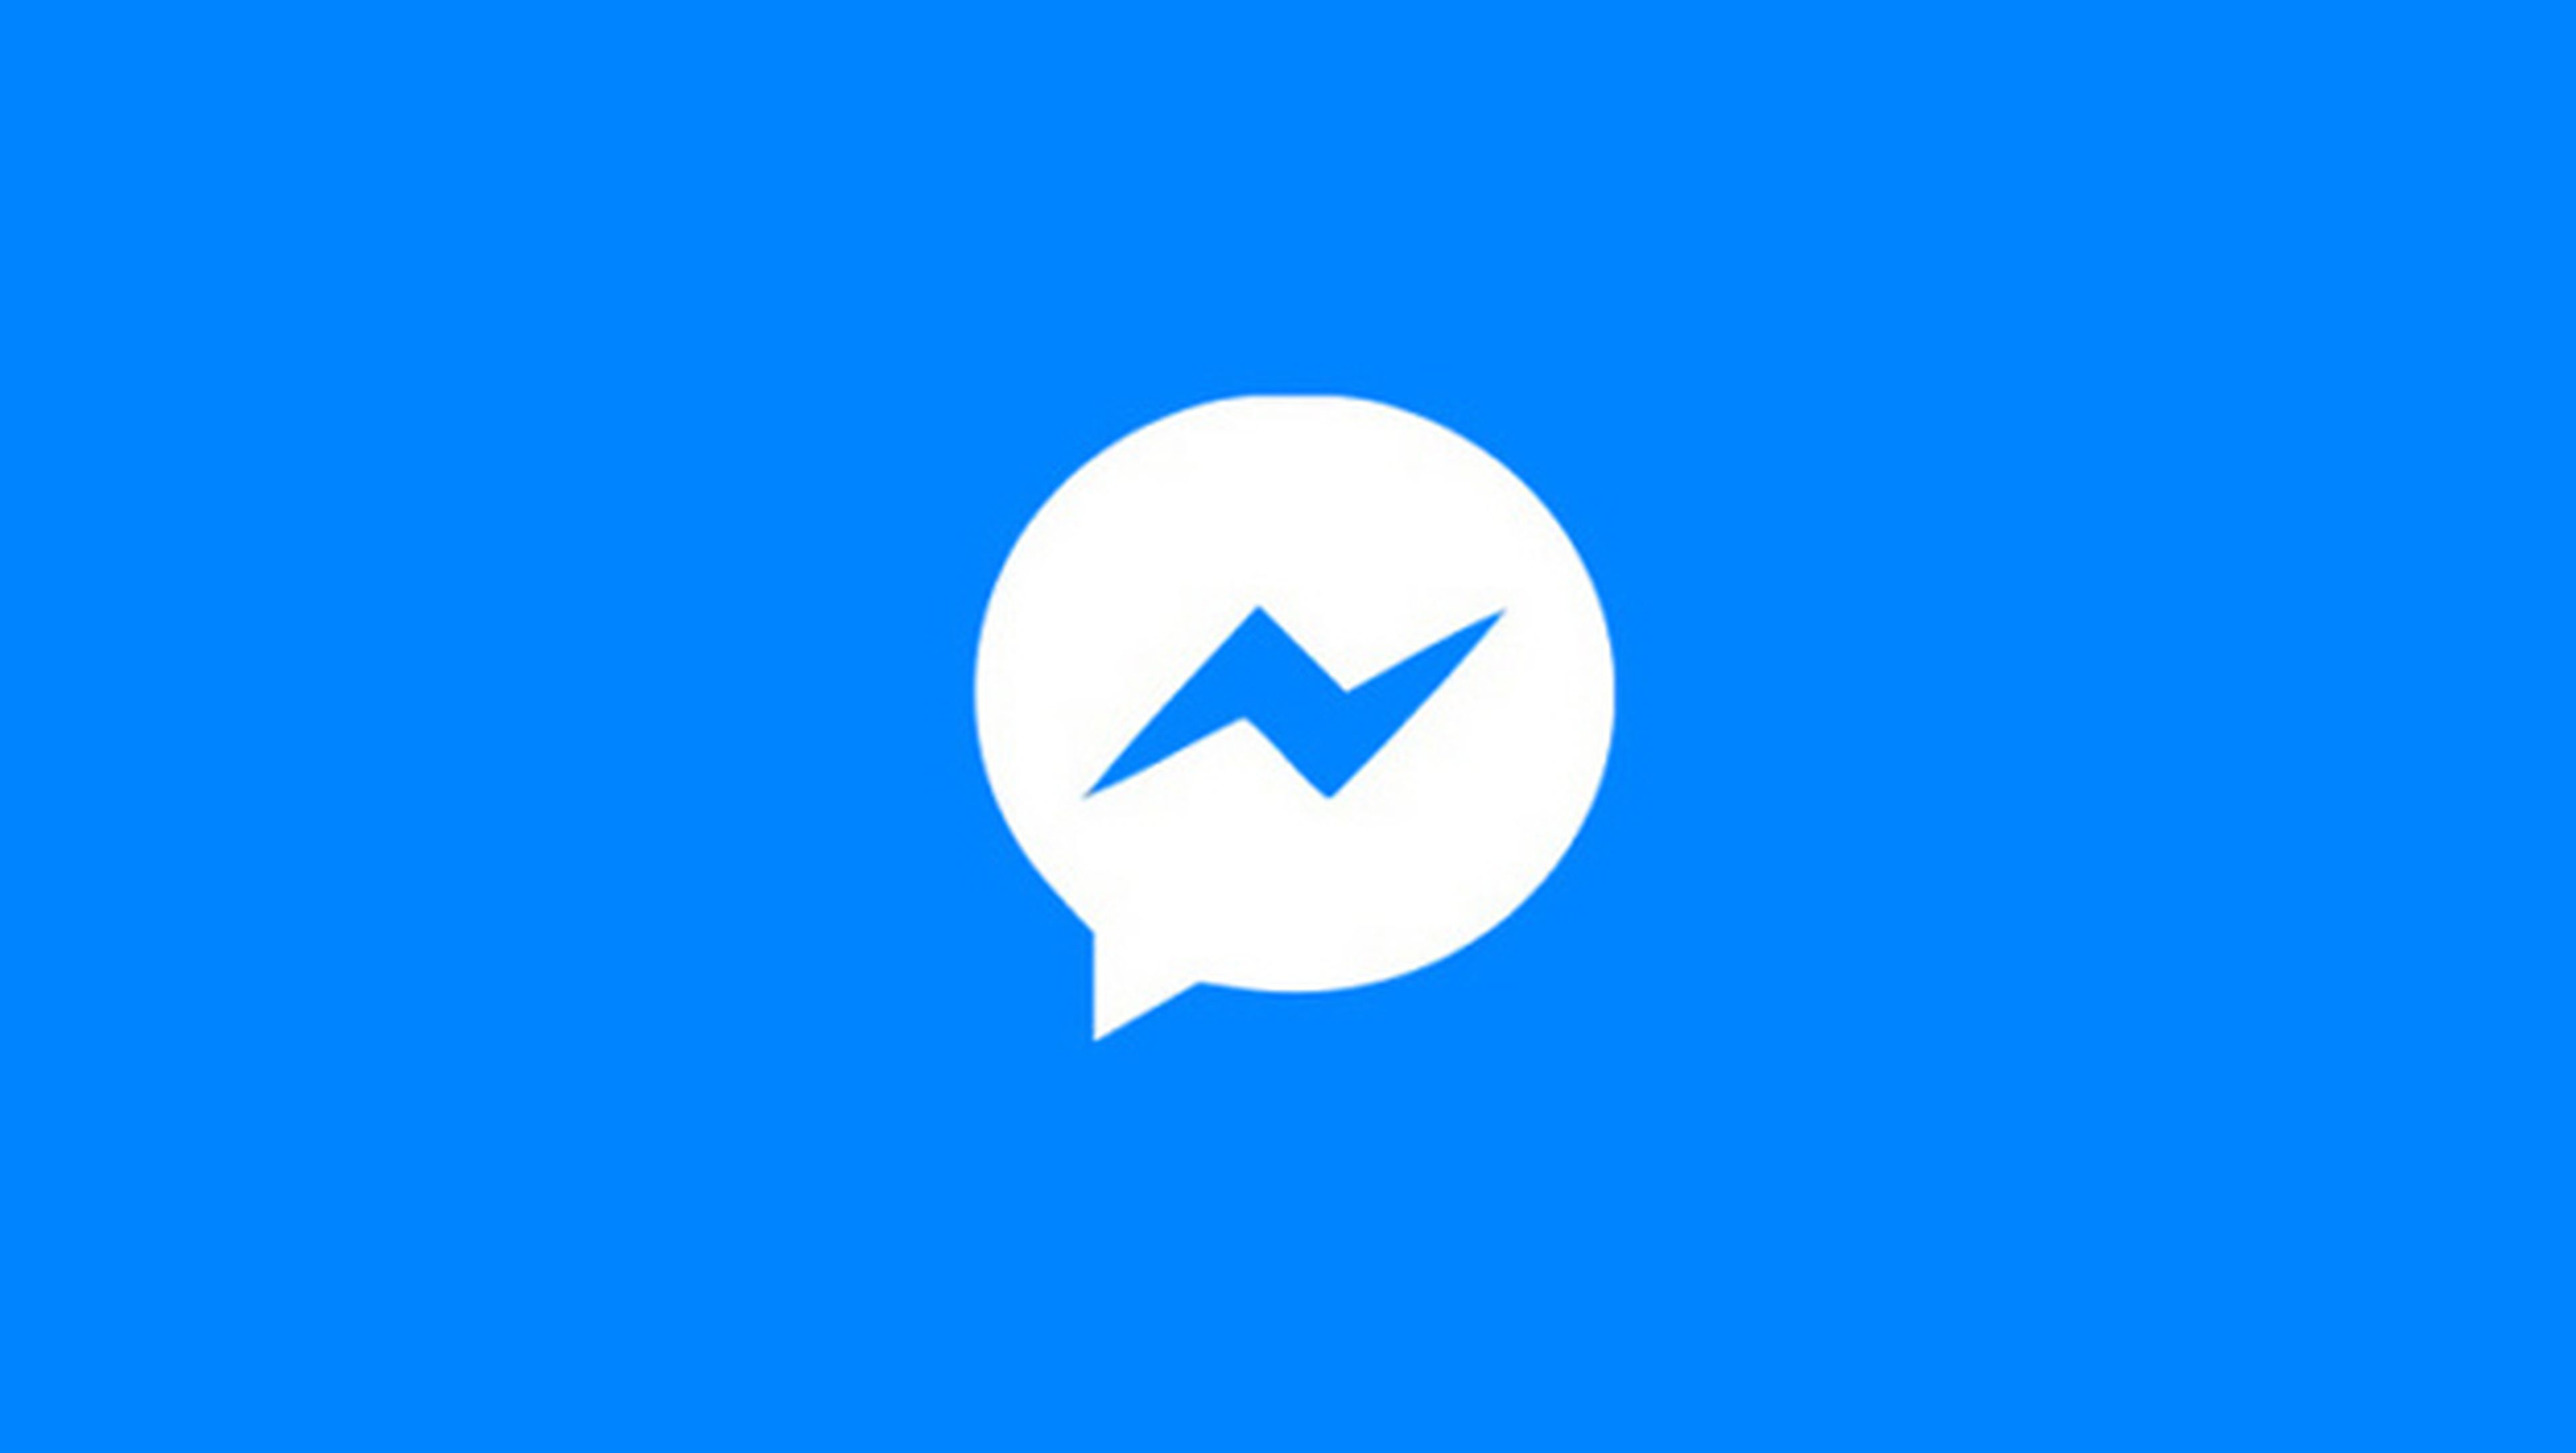 Nueva interfaz de Facebook Messenger en Android